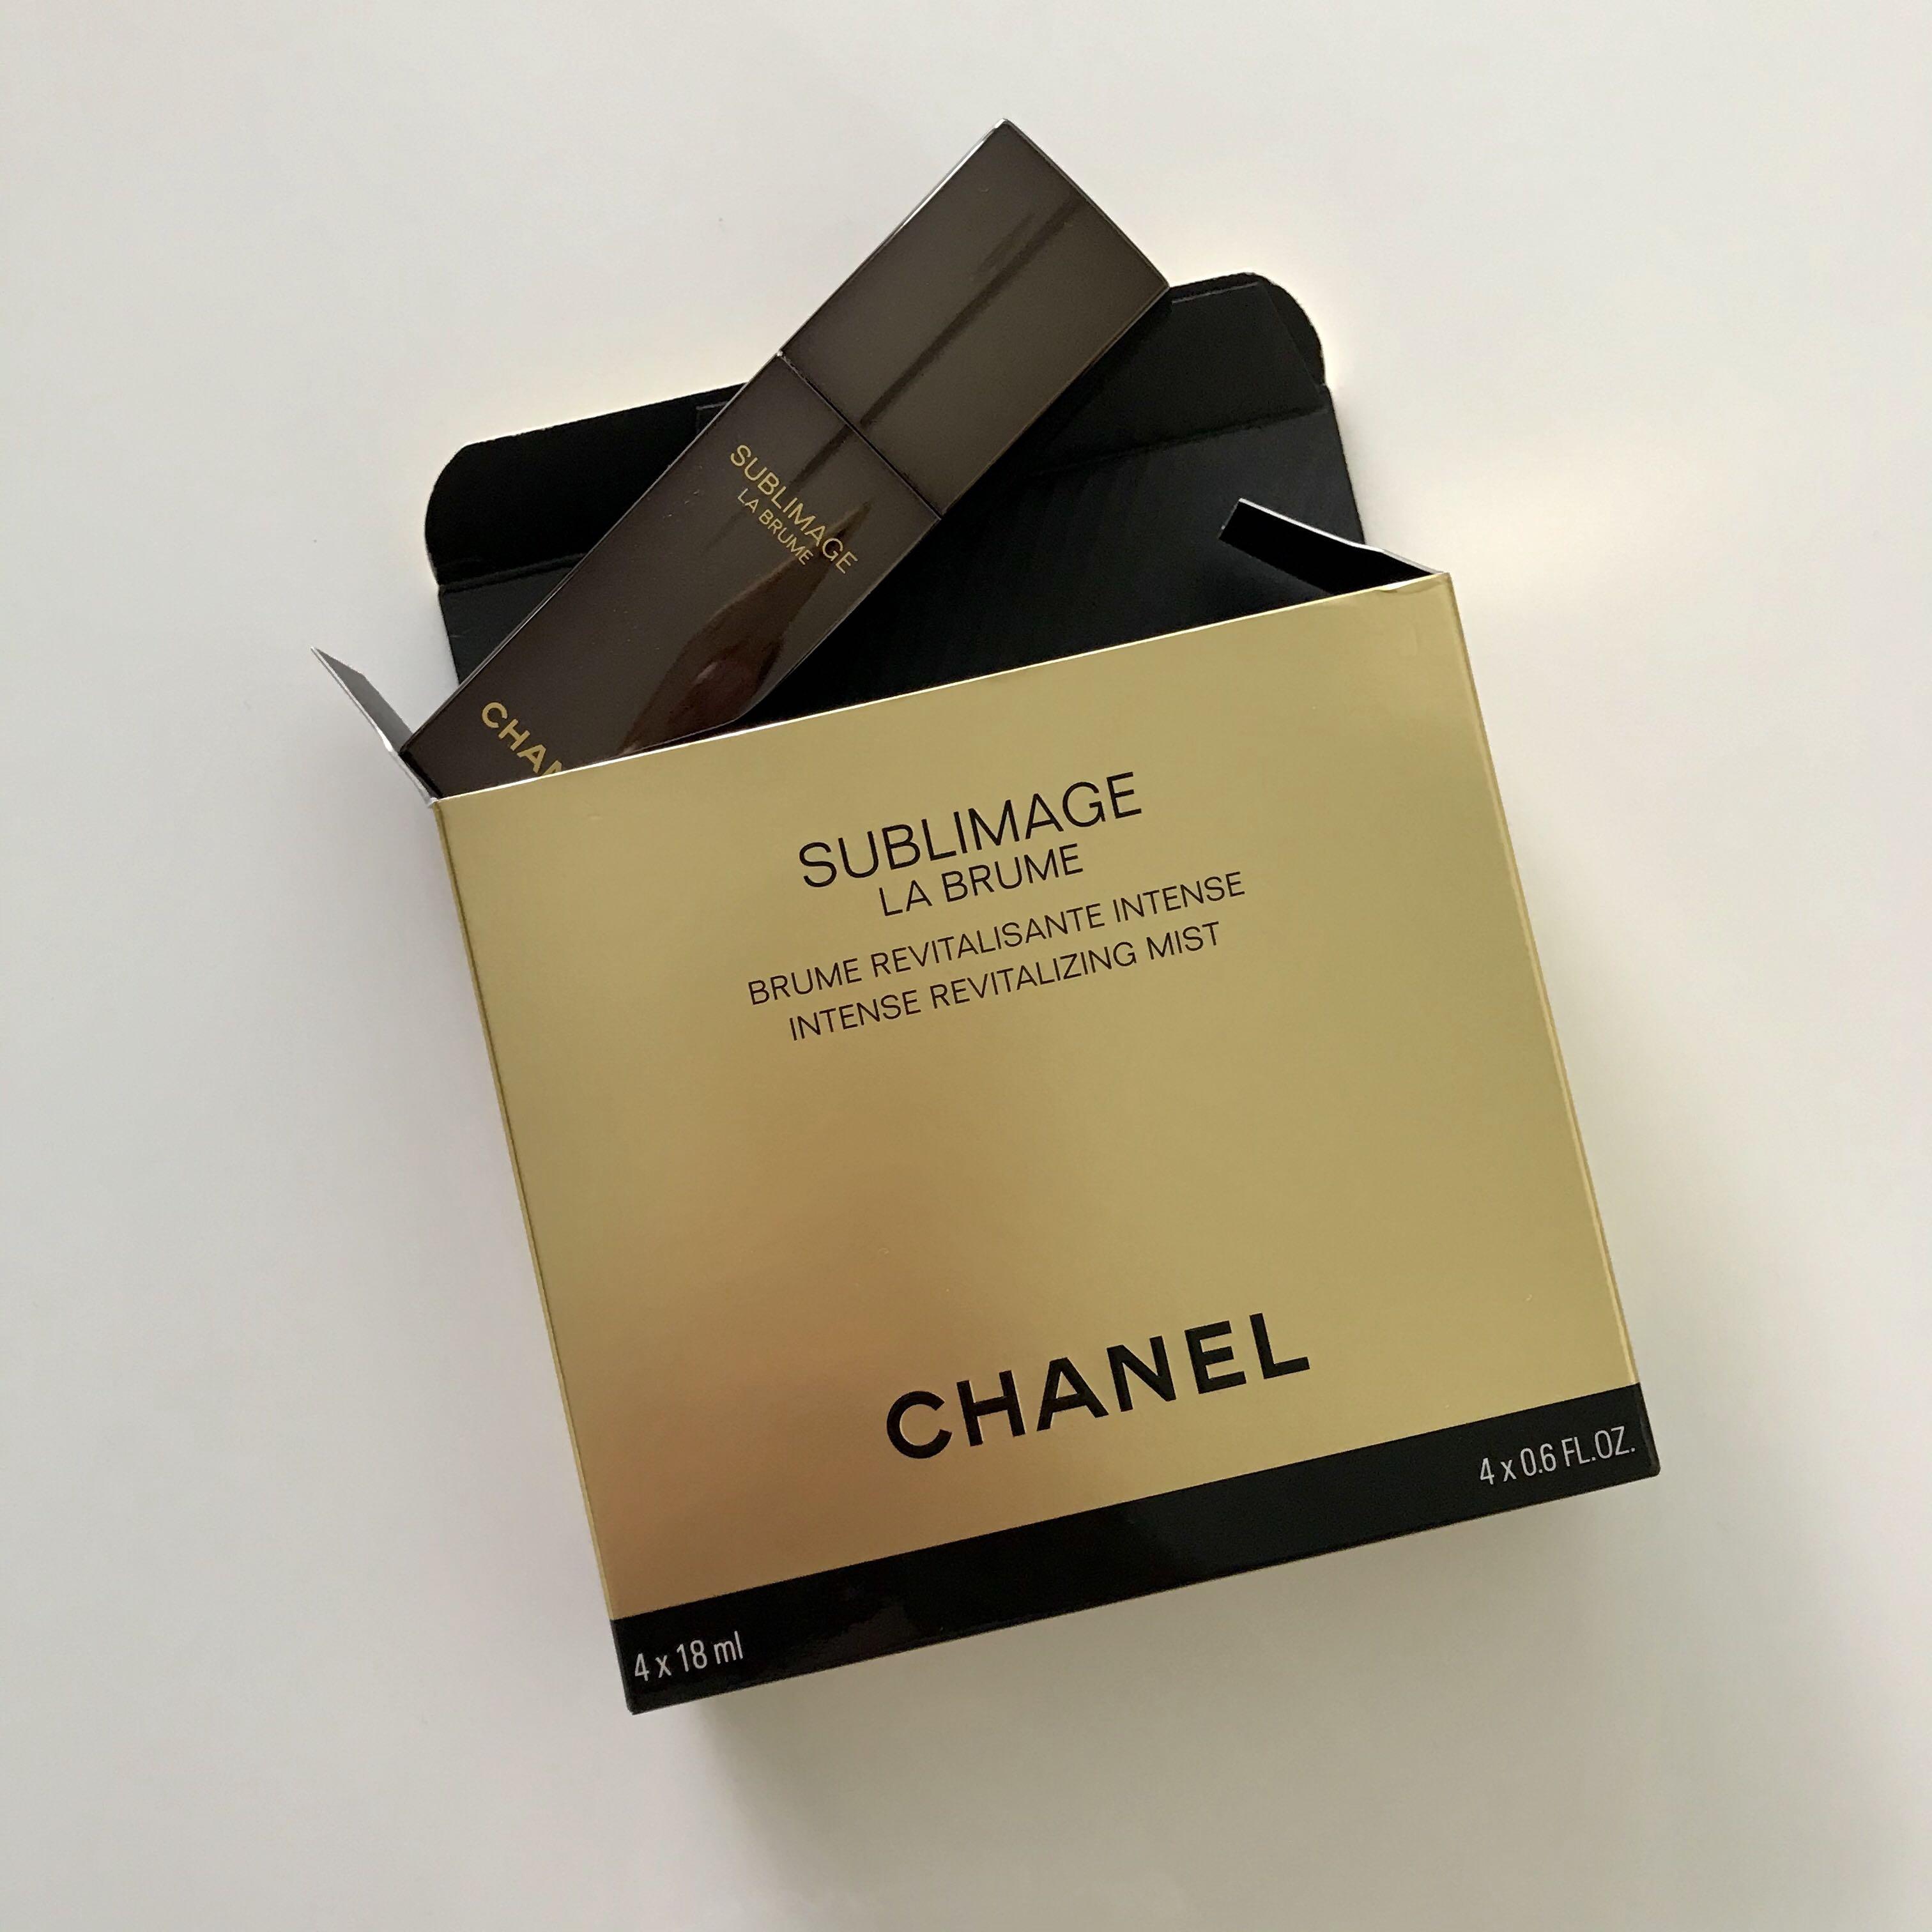 Chanel Sublimage La Brume Intense Revitalizing Mist, Beauty